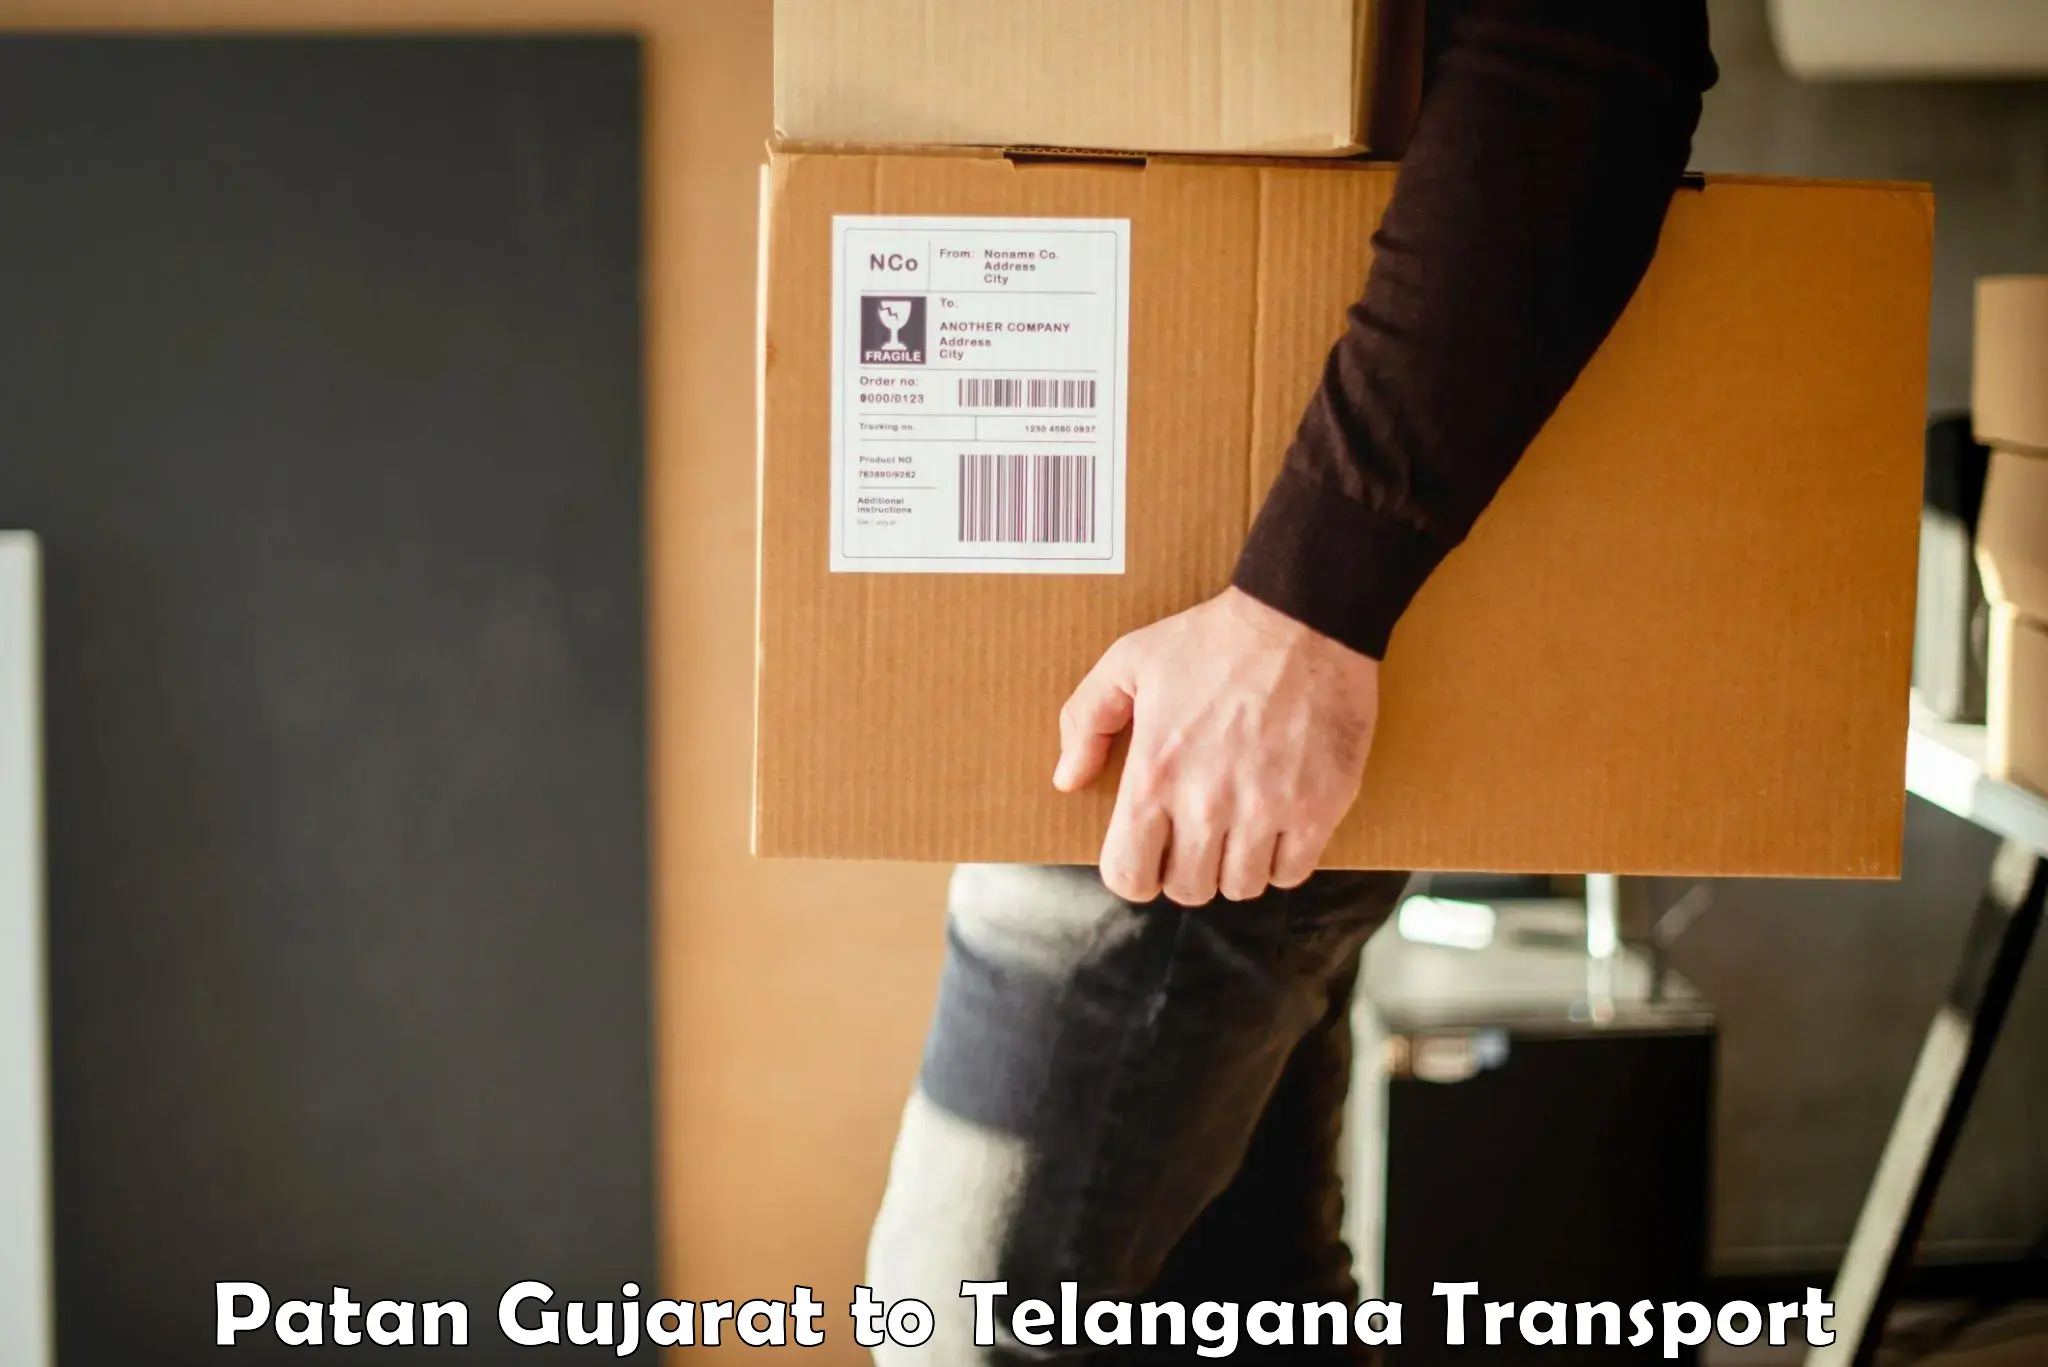 Furniture transport service Patan Gujarat to Pathipaka